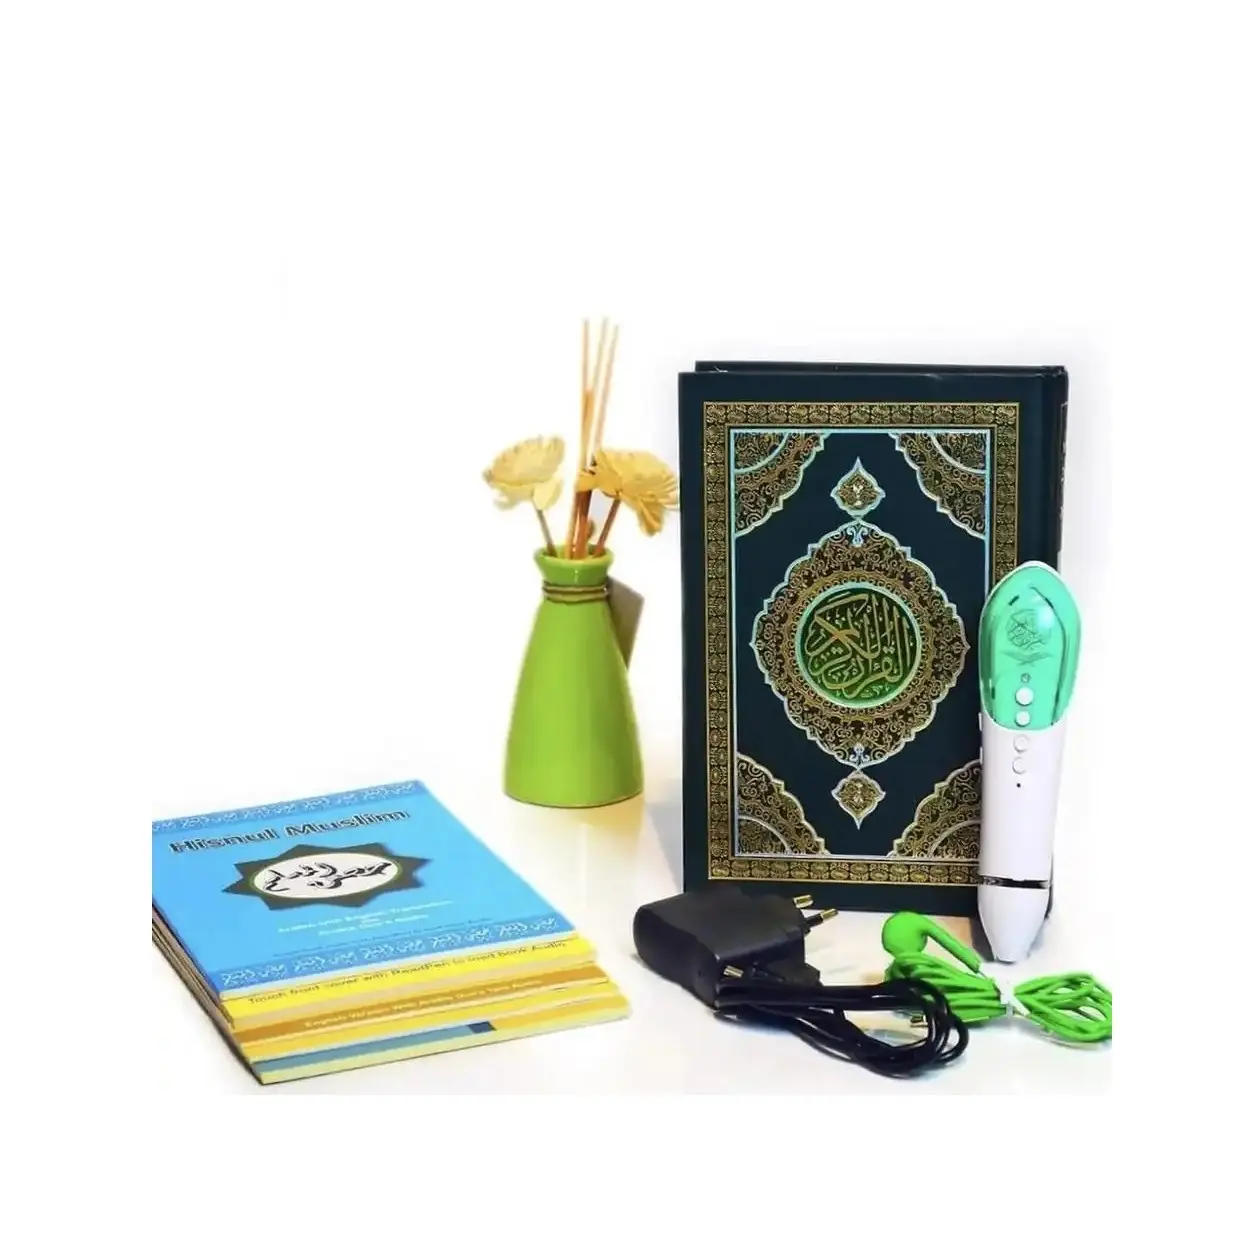 ปากกาคัมภีร์กุรอาน PQ-16อ่านคัมภีร์กุรอานมุสลิมดิจิทัล